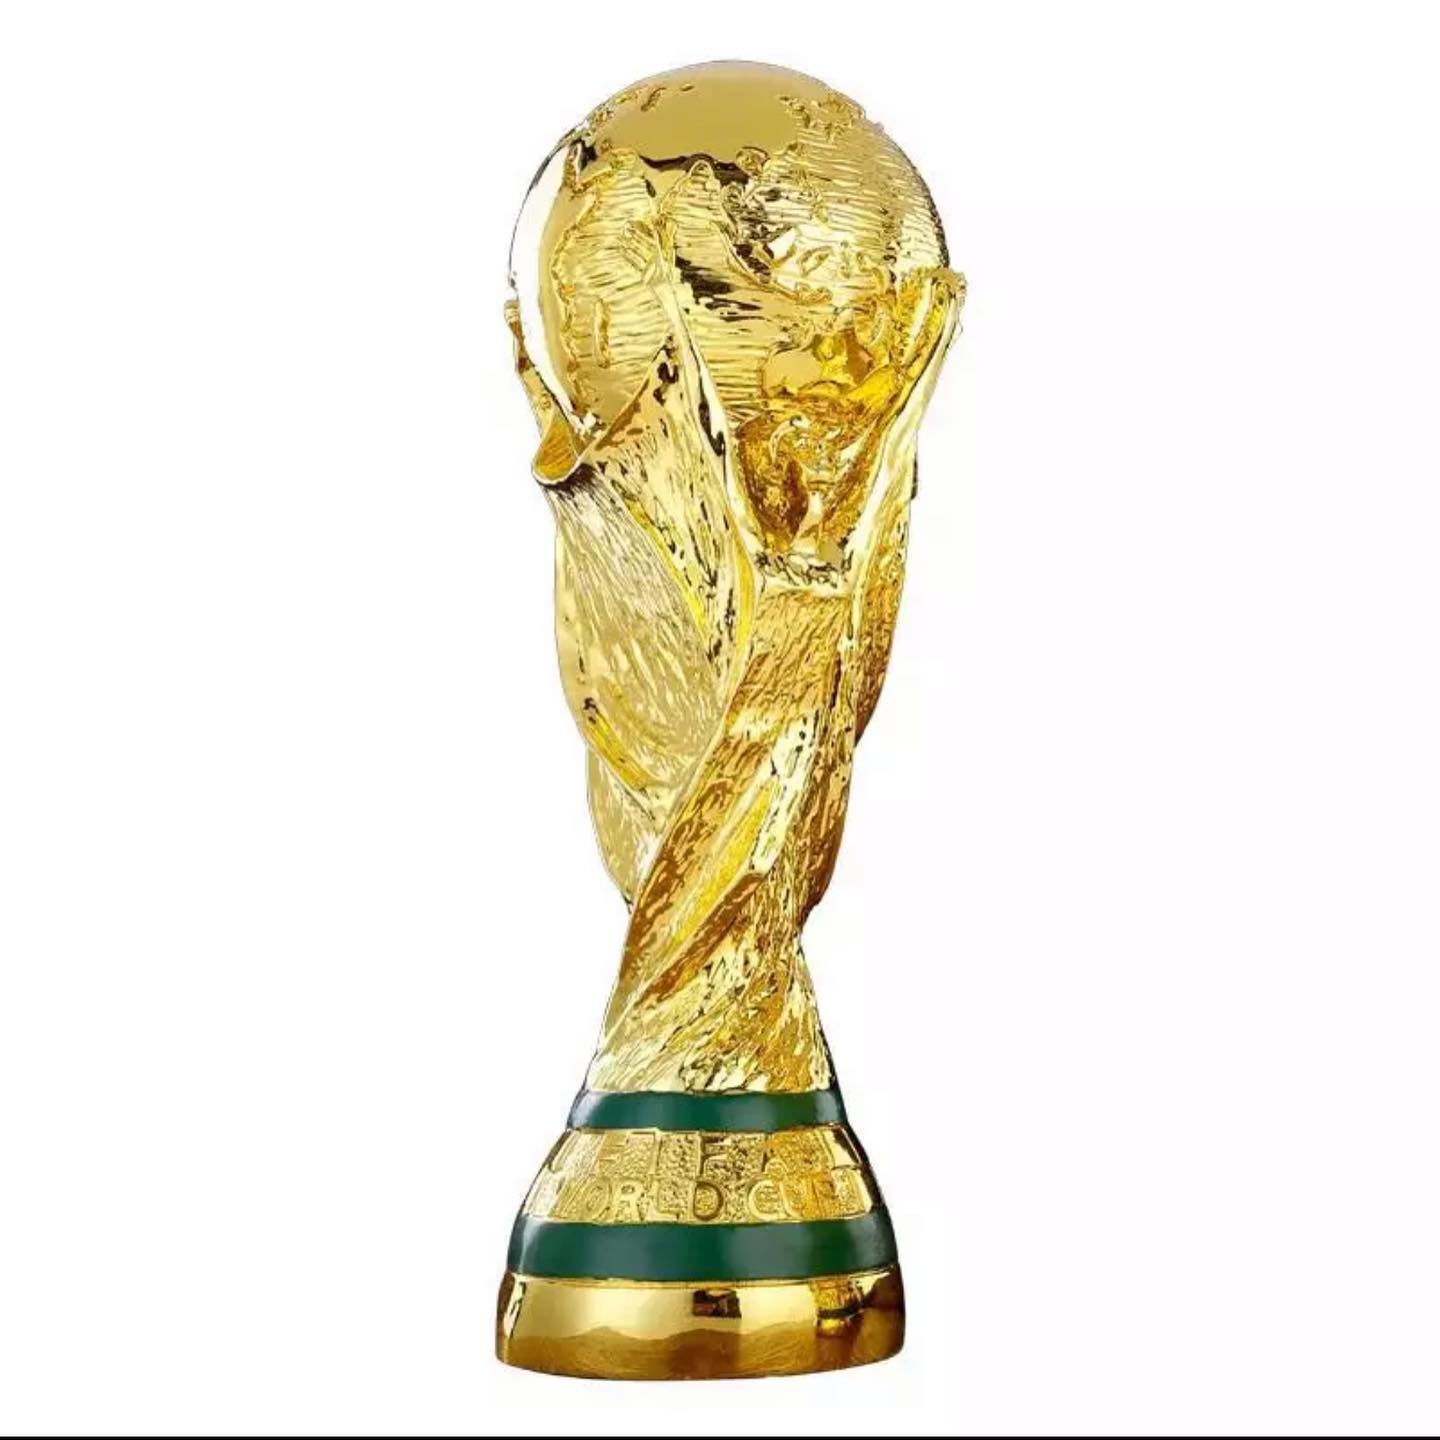 نسخة كأس العالم لكرة القدم 2022 / الوزن الثقيل